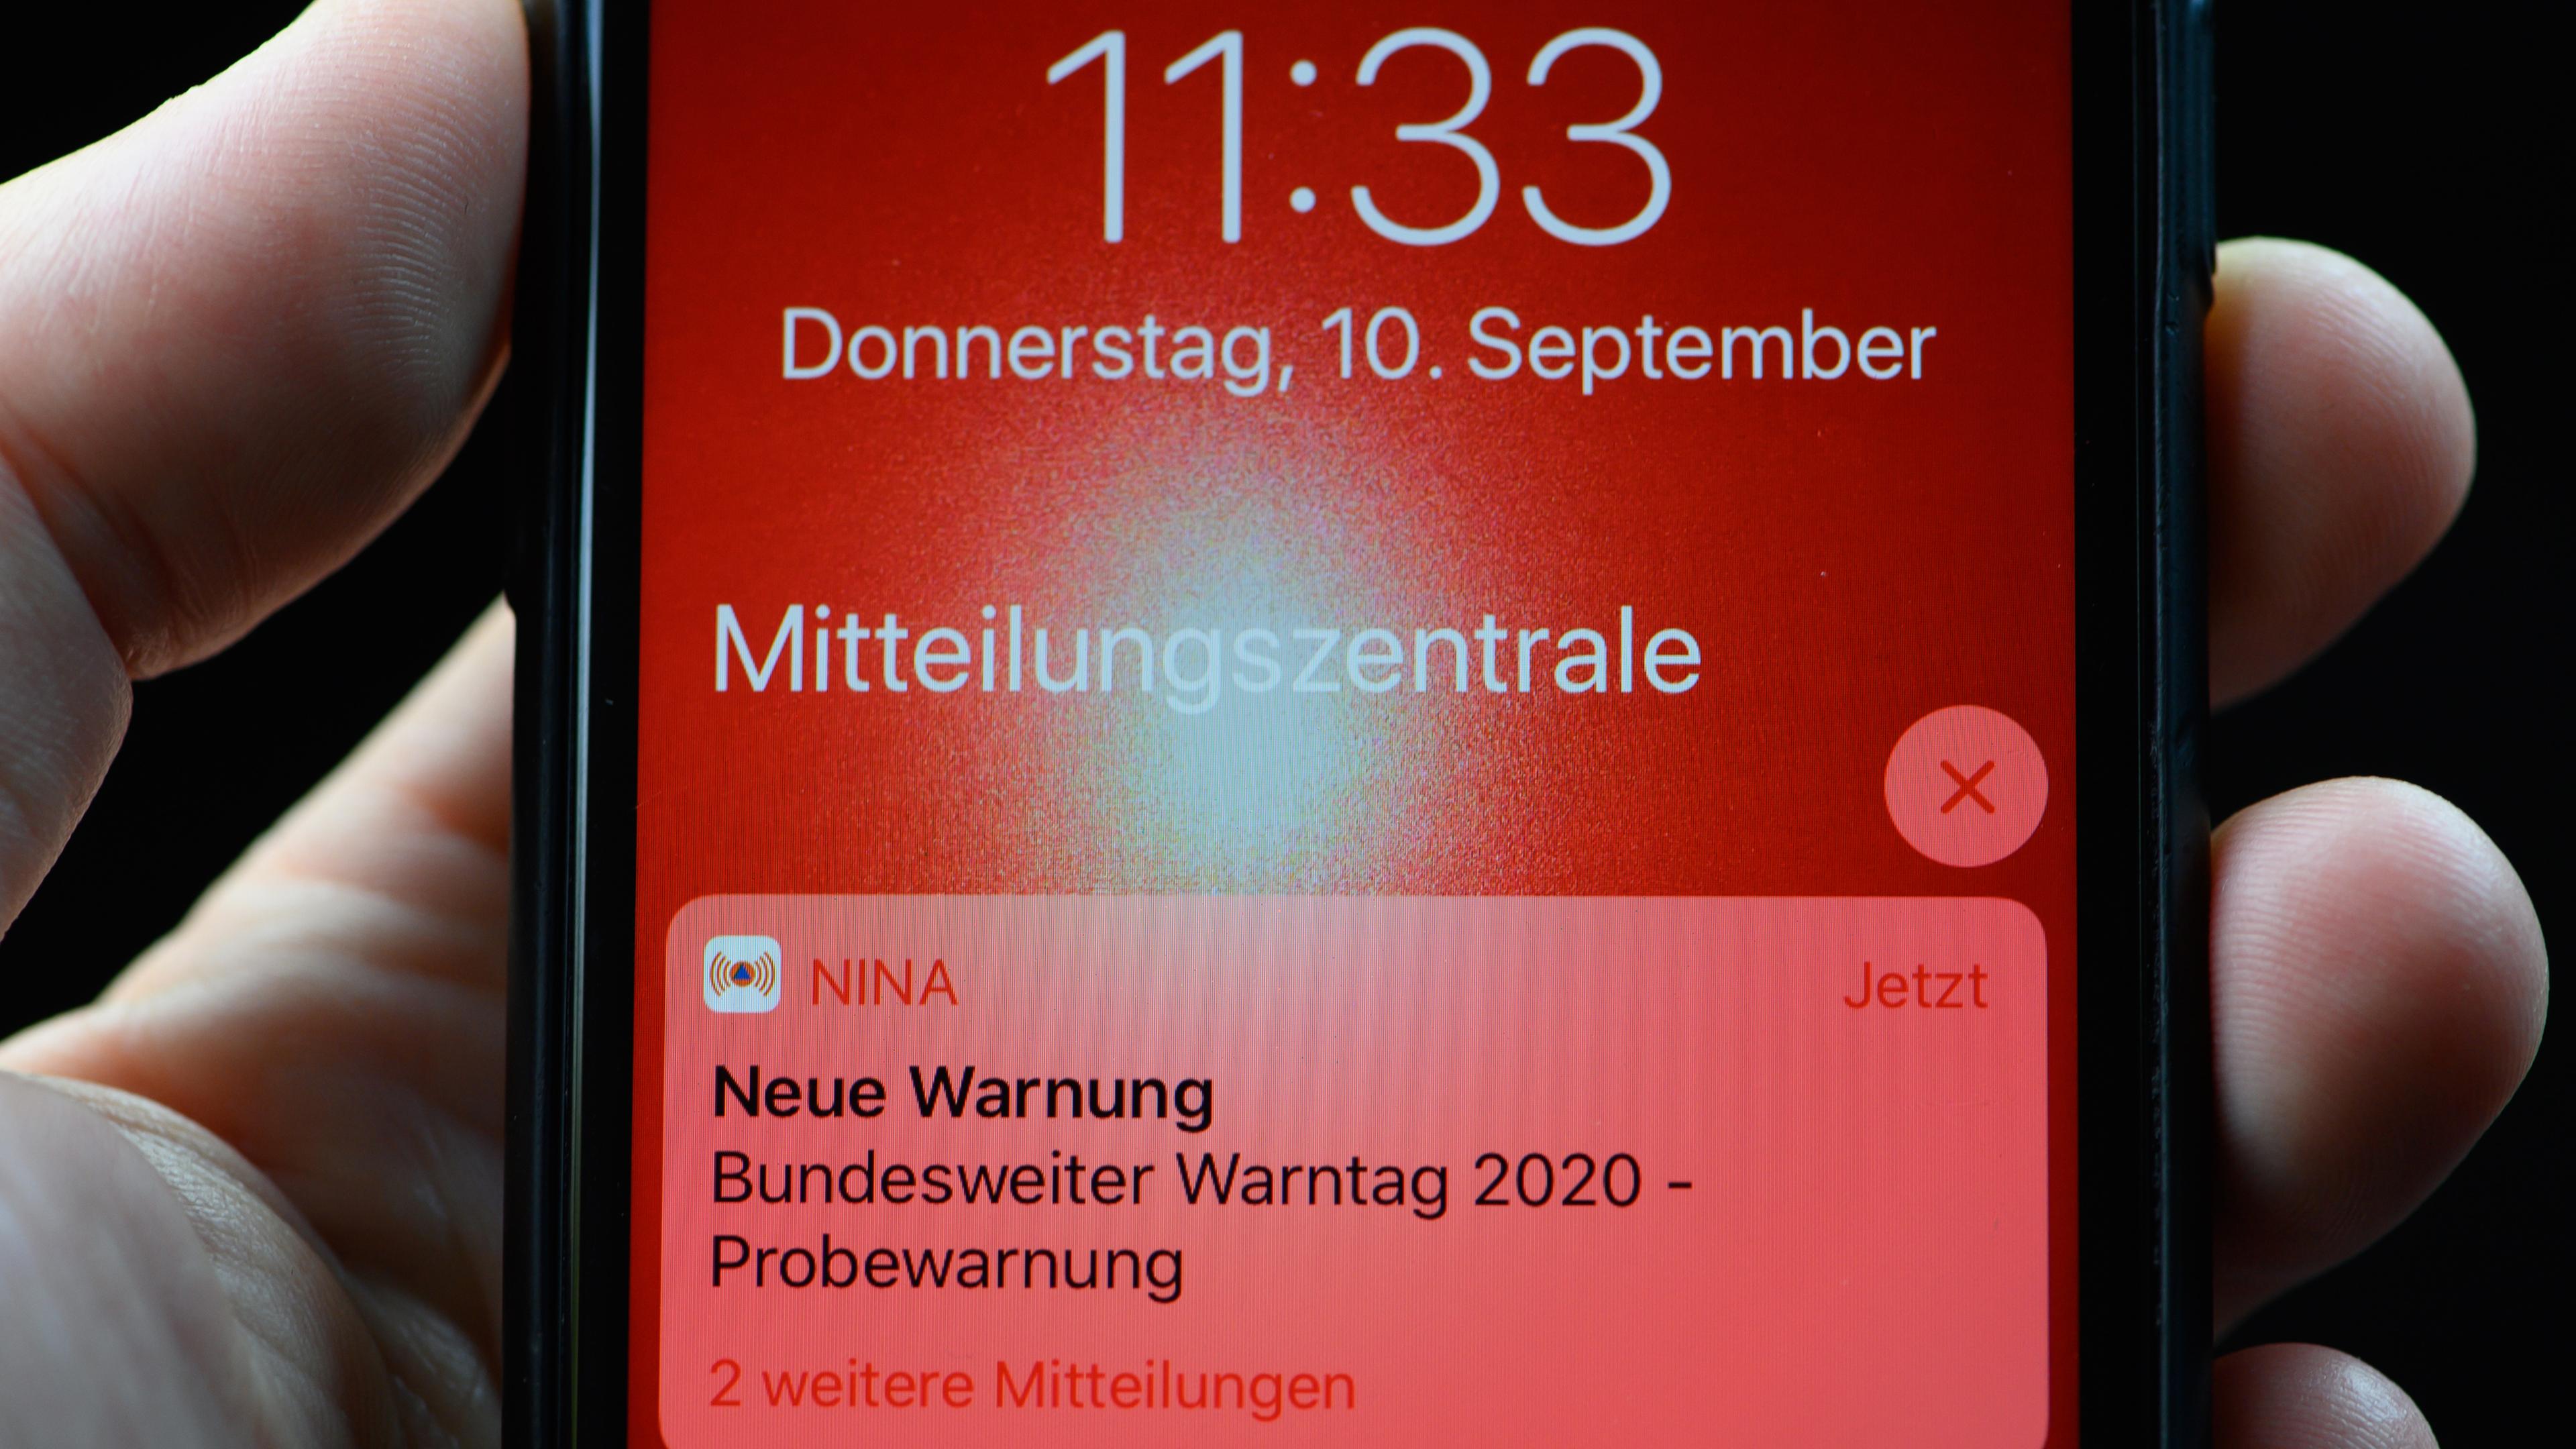 Mitteilung des bundesweiten Warntags auf einem Smartphone